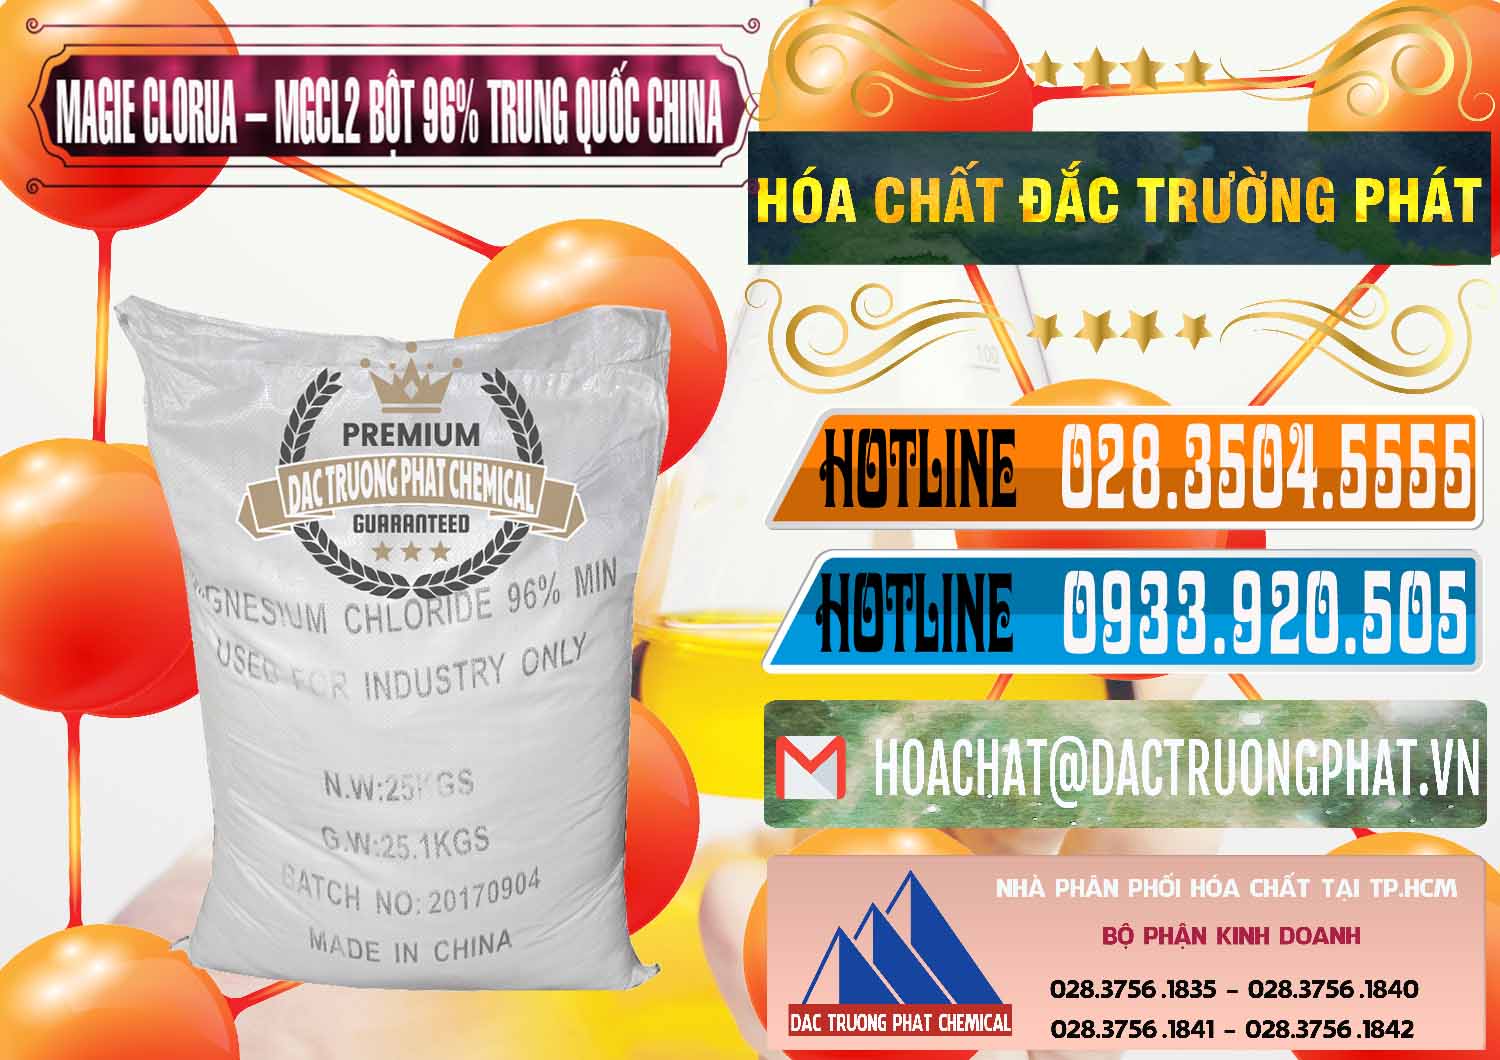 Cty bán ( cung cấp ) Magie Clorua – MGCL2 96% Dạng Bột Bao Chữ Đen Trung Quốc China - 0205 - Đơn vị phân phối và cung cấp hóa chất tại TP.HCM - stmp.net